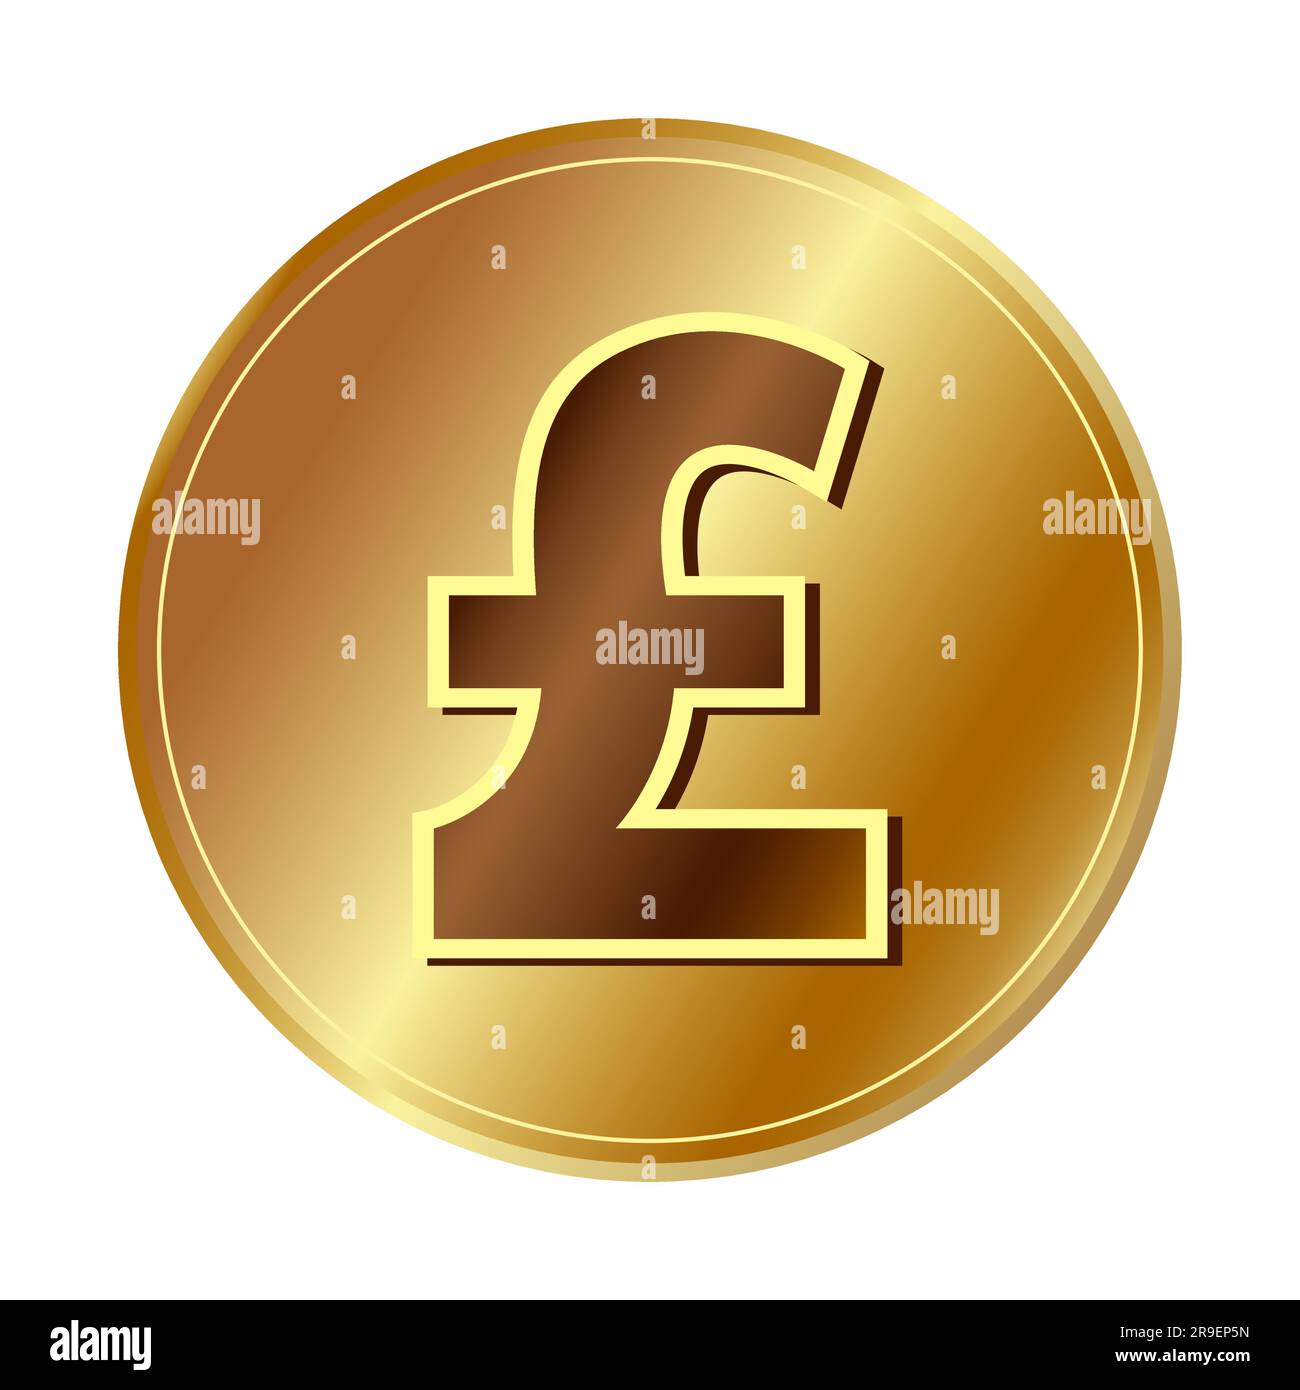 Goldenes Pfund Sterling Symbol Goldenes Münzsymbol Gelddesign Währungsschild in Gold Vektor-Illustration isoliert auf weißem Hintergrund Stock Vektor